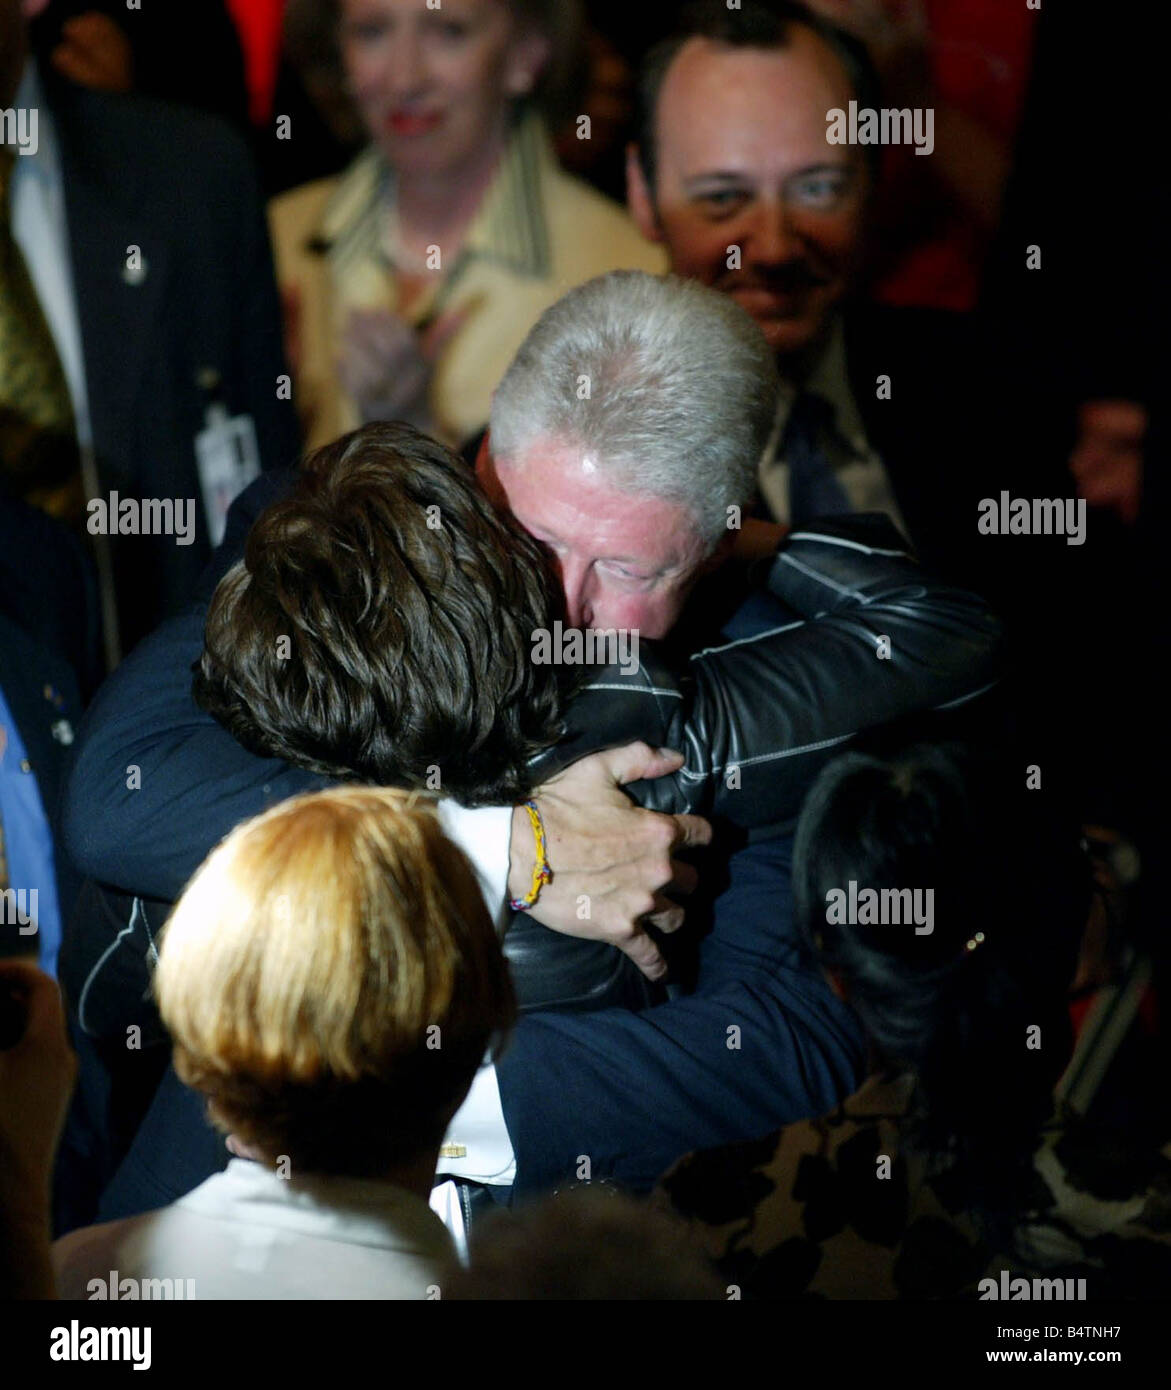 Conferencia del Partido Laborista de octubre de 2002 Bill Clinton Blackpool abrazos abrazos Cherie Blair tras intervención política esposa del Primer Ministro Tony Blair PM Foto de stock